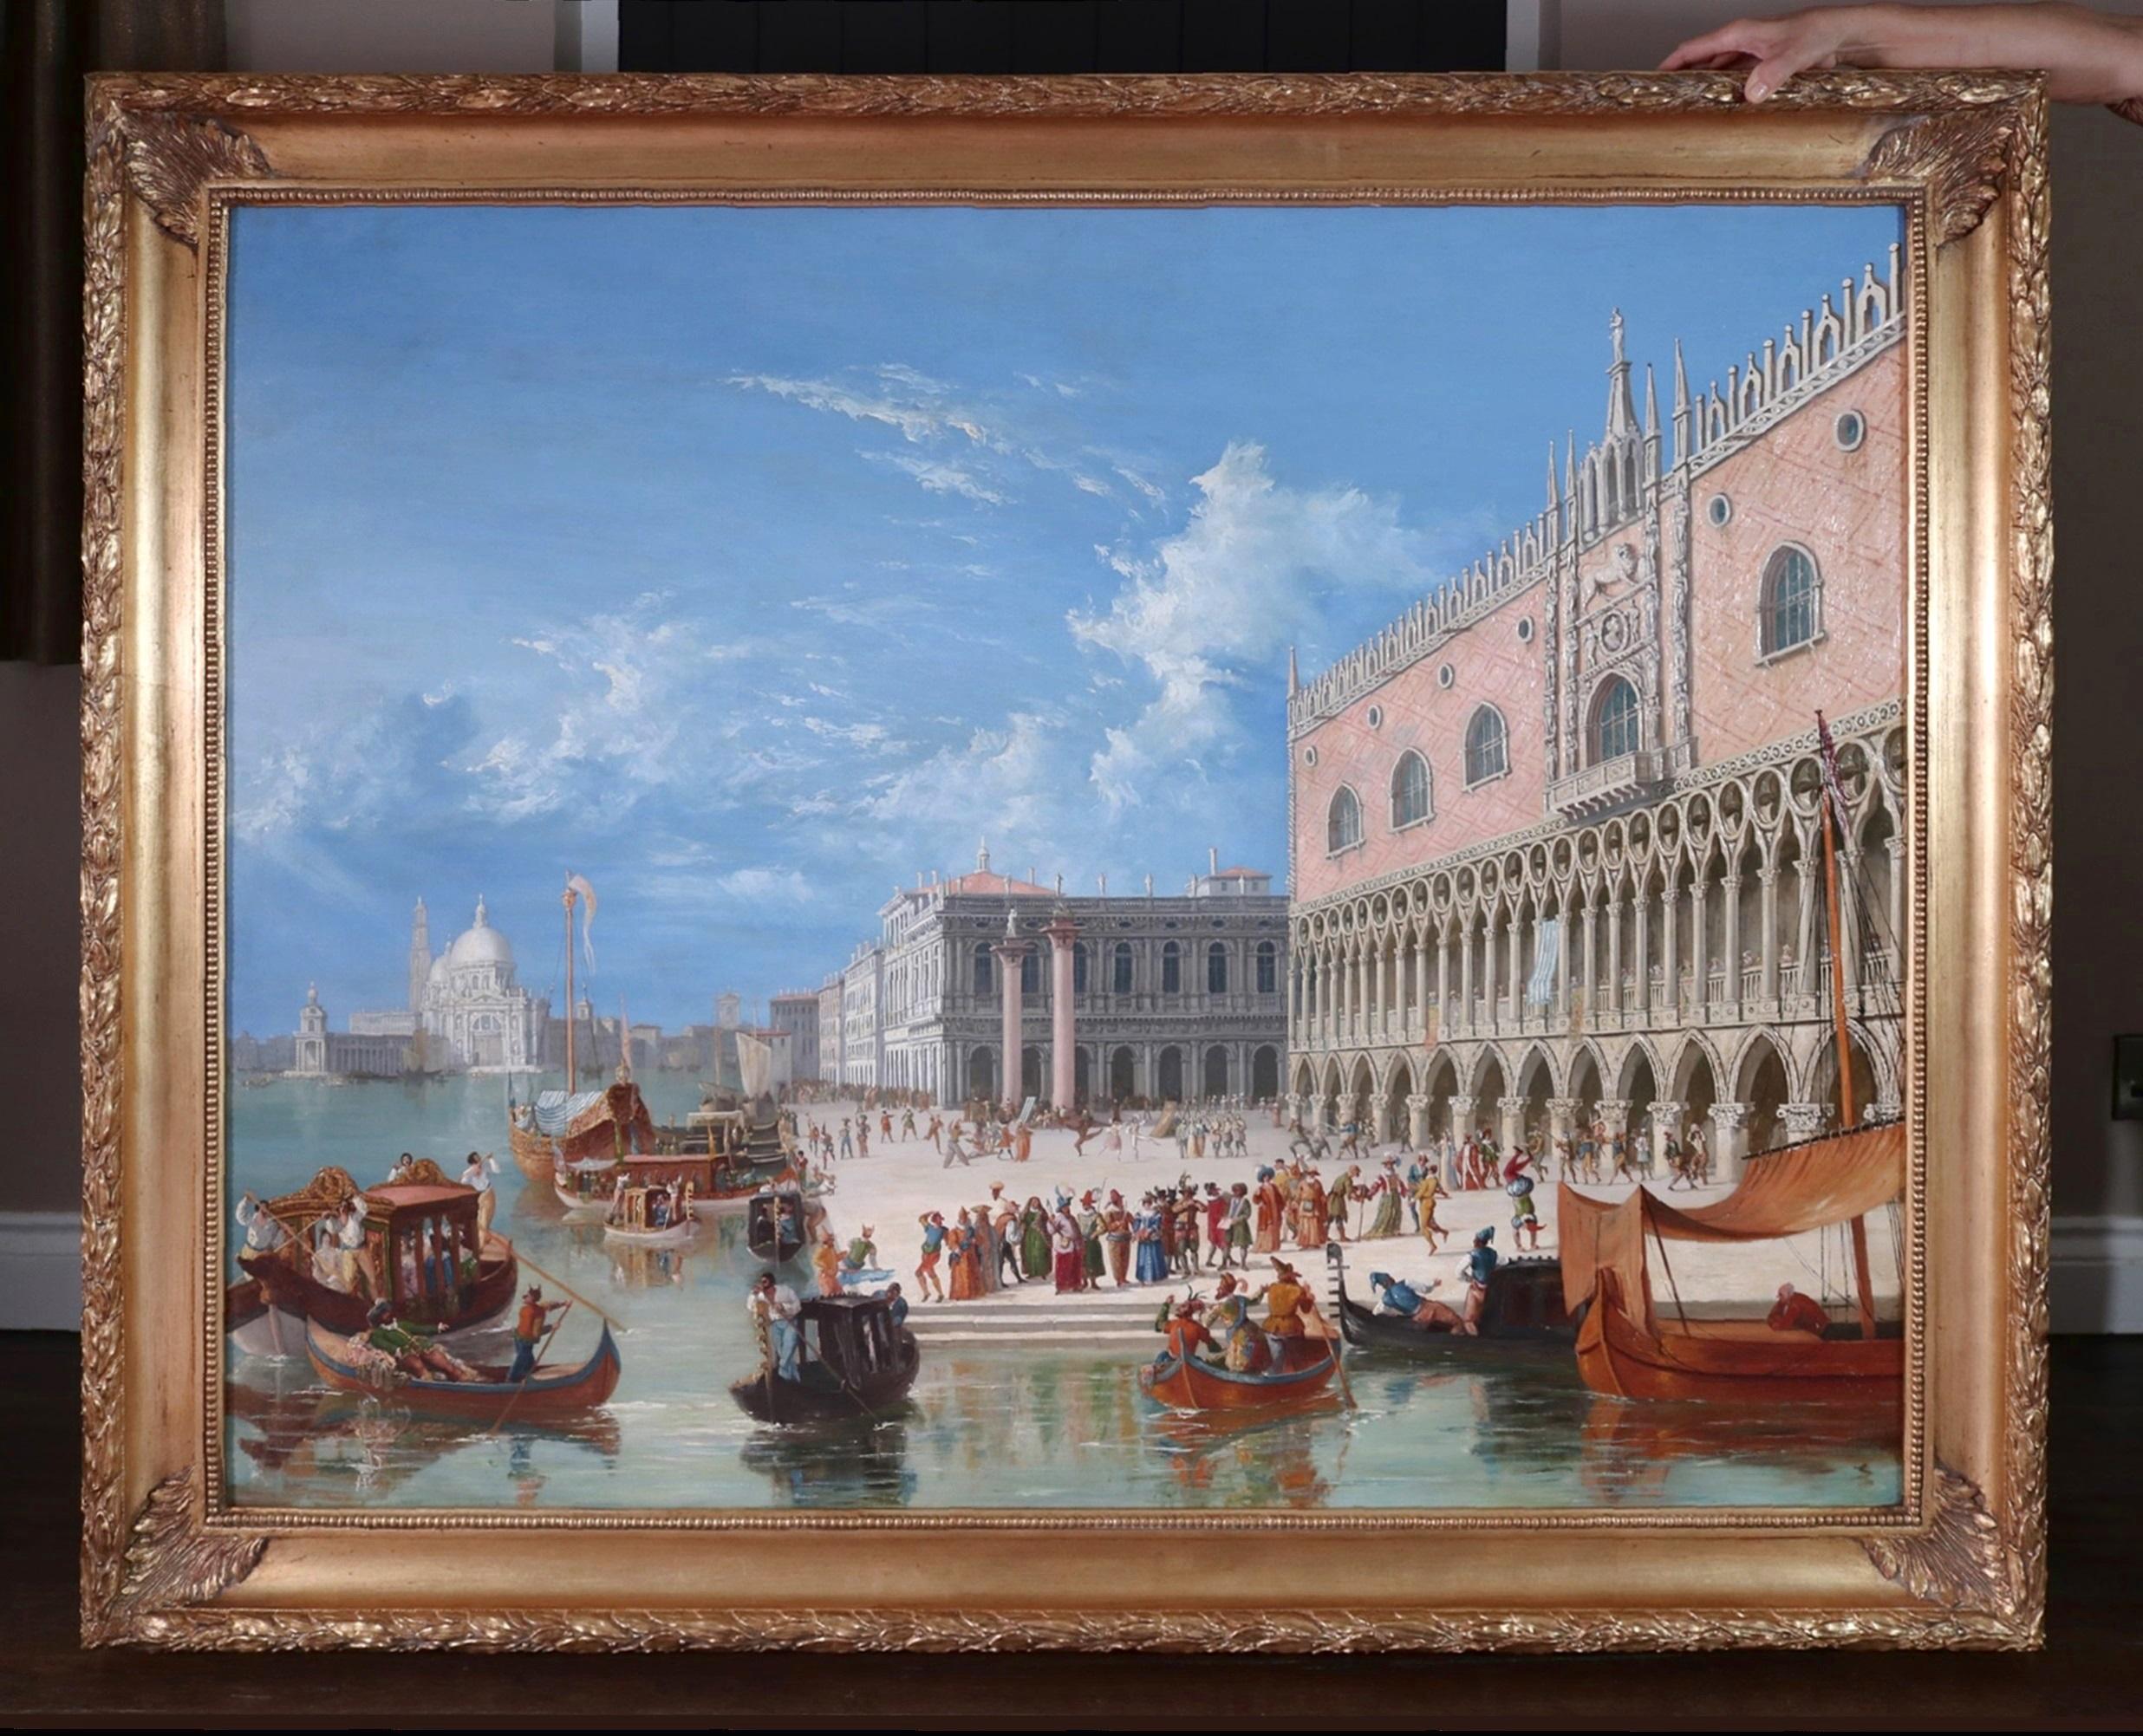 Carnevale di Venezia - Großes Ölgemälde von Canaletto aus Venedig, Italien, 19. Jahrhundert – Painting von James Holland